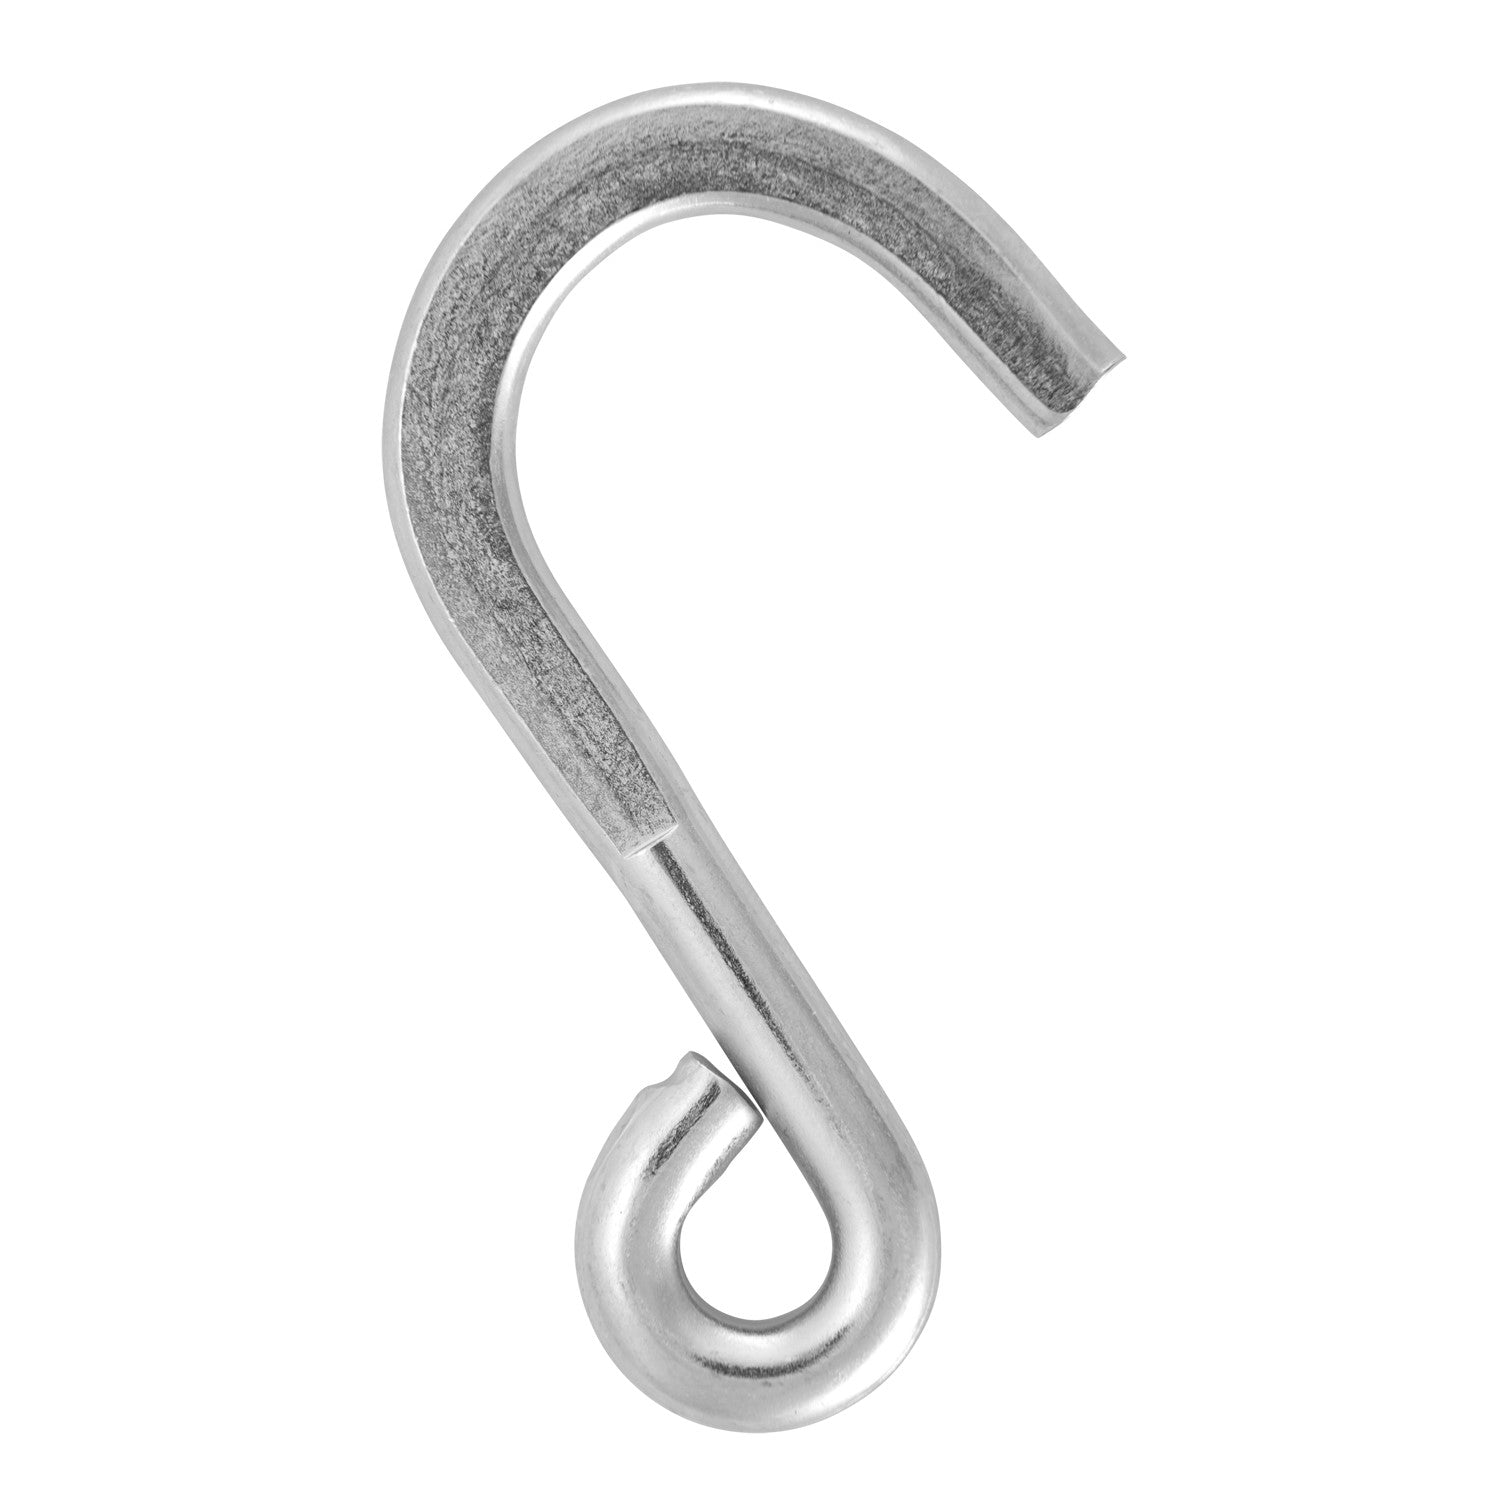 1/4 Steel S-Hook - Rope Ratchet